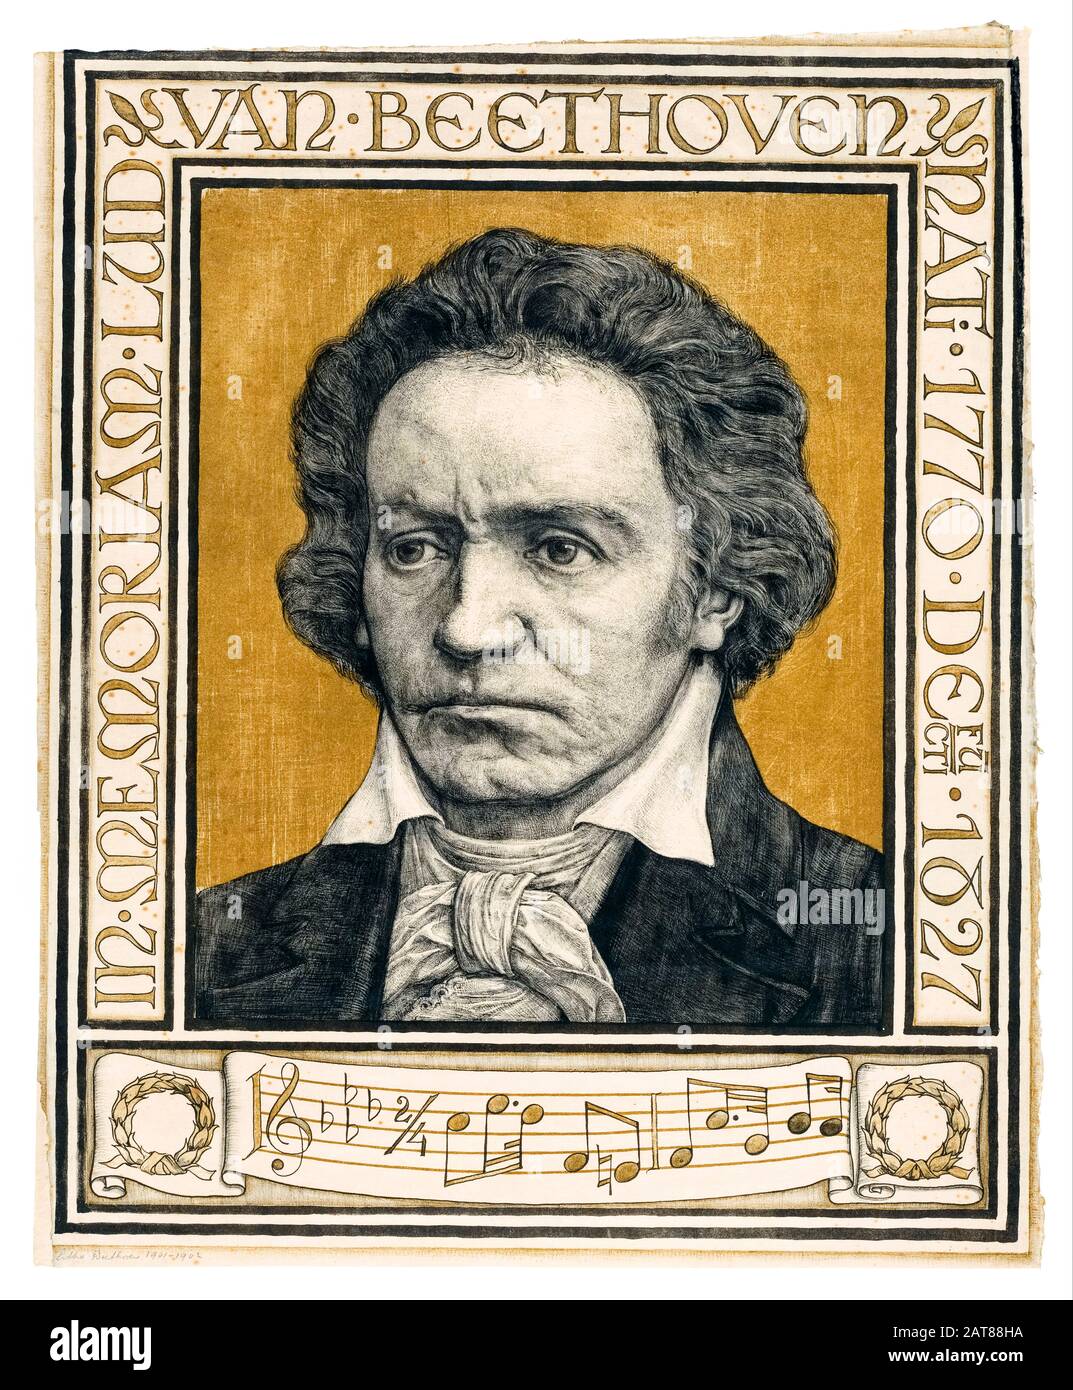 Beethoven portrait, Ludwig van Beethoven, (1770-1827) by Antoon Derkinderen, 1901-1902 Stock Photo